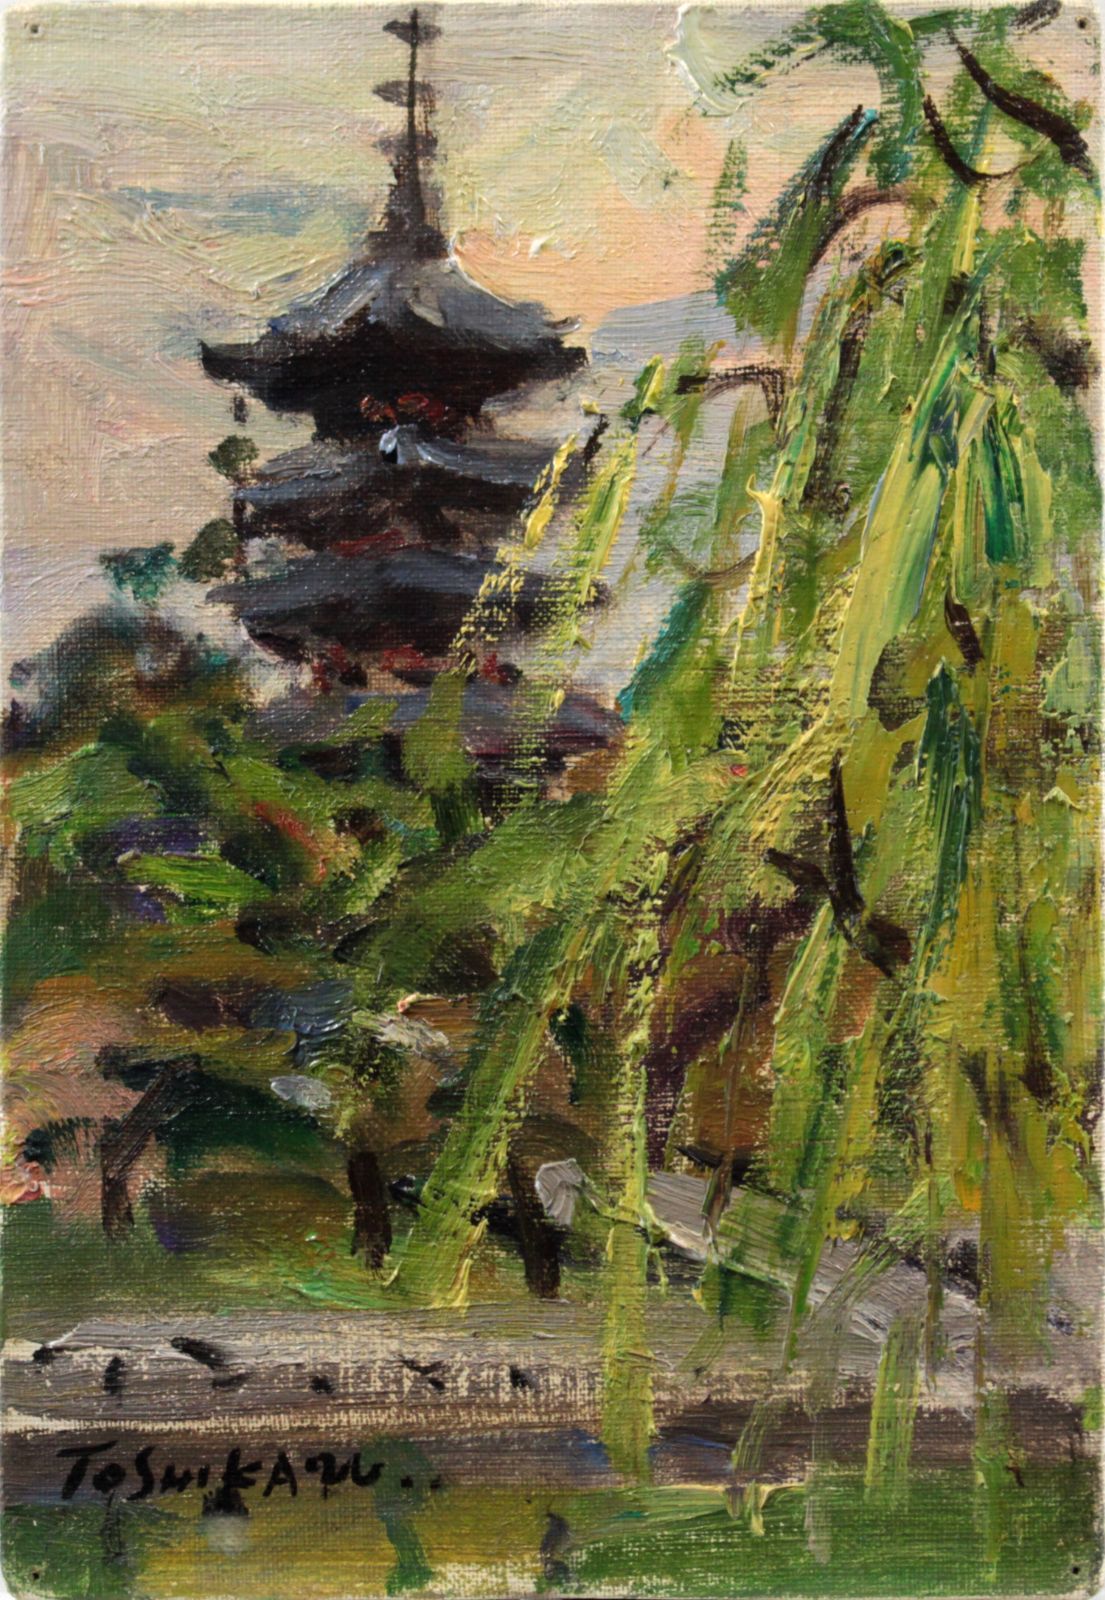 島田利一『奈良風景（猿沢の池）』油彩画【真作保証】 絵画